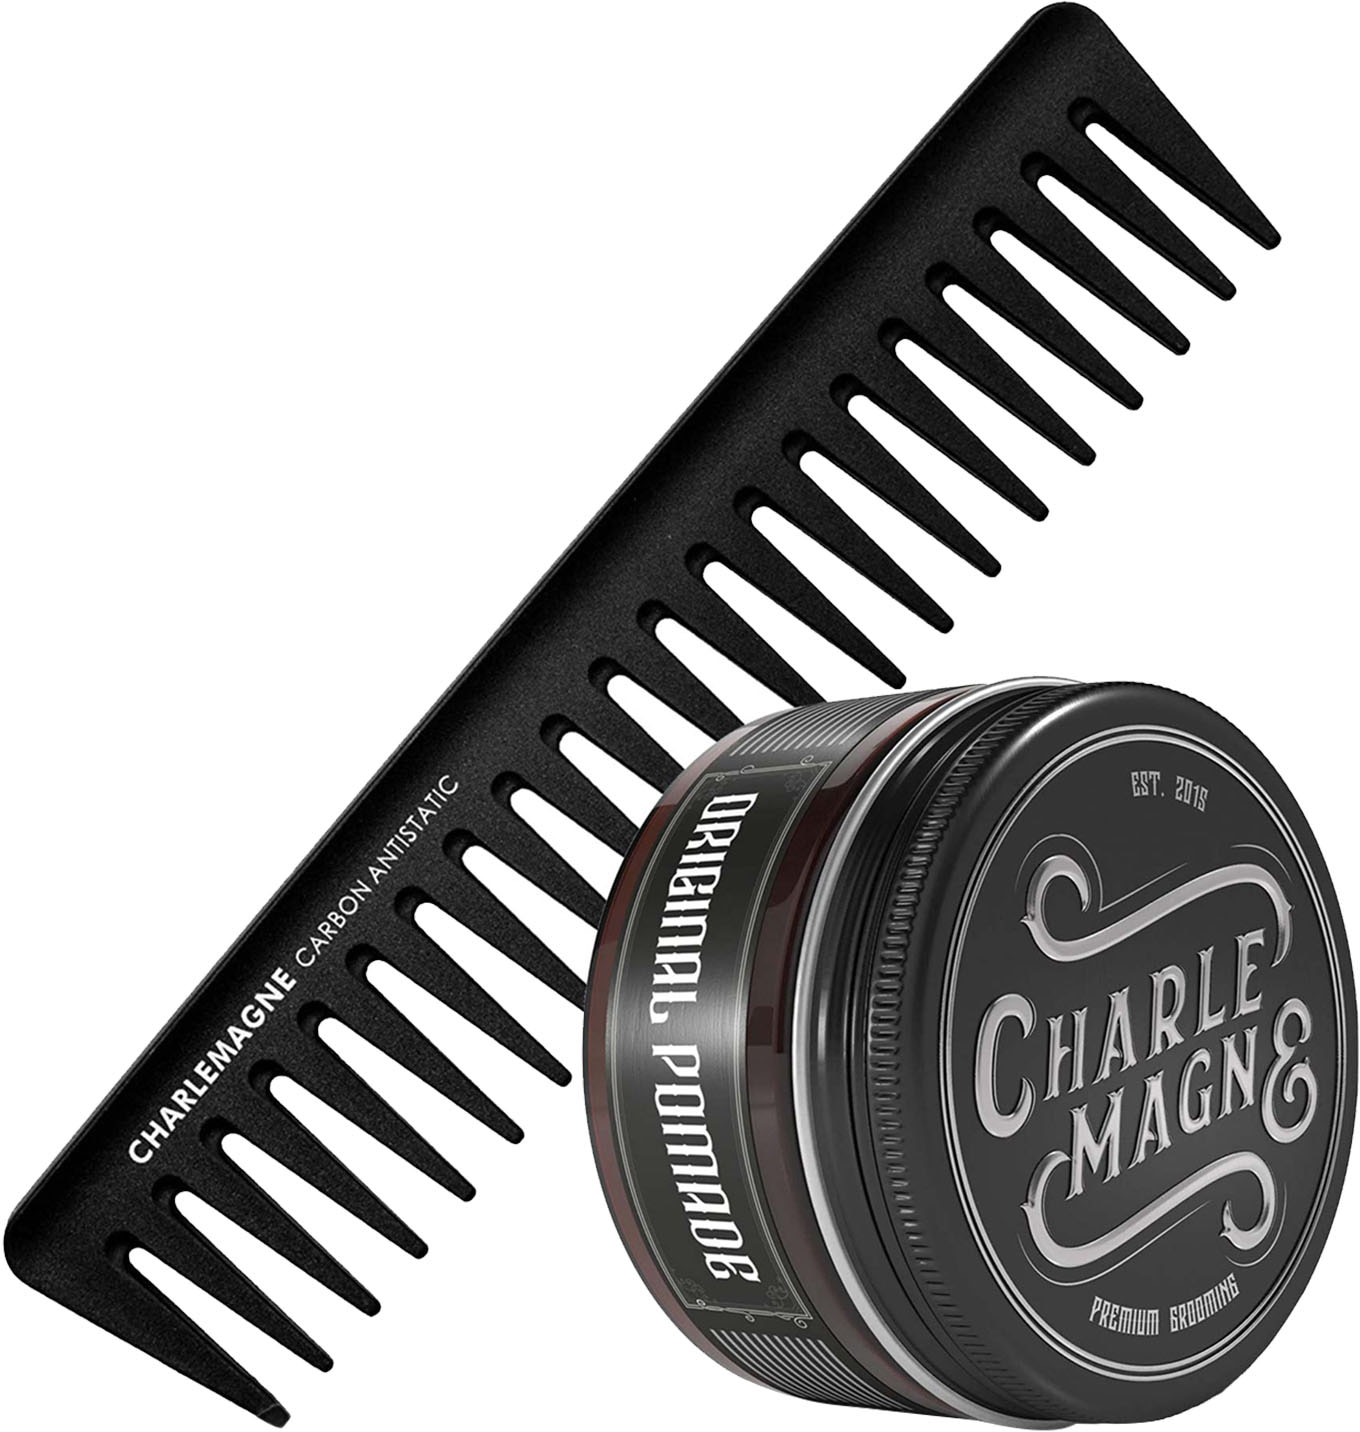 CHARLEMAGNE Haarpflege-Set »The OG's Essentials«, (2 tlg.) kaufen bei OTTO